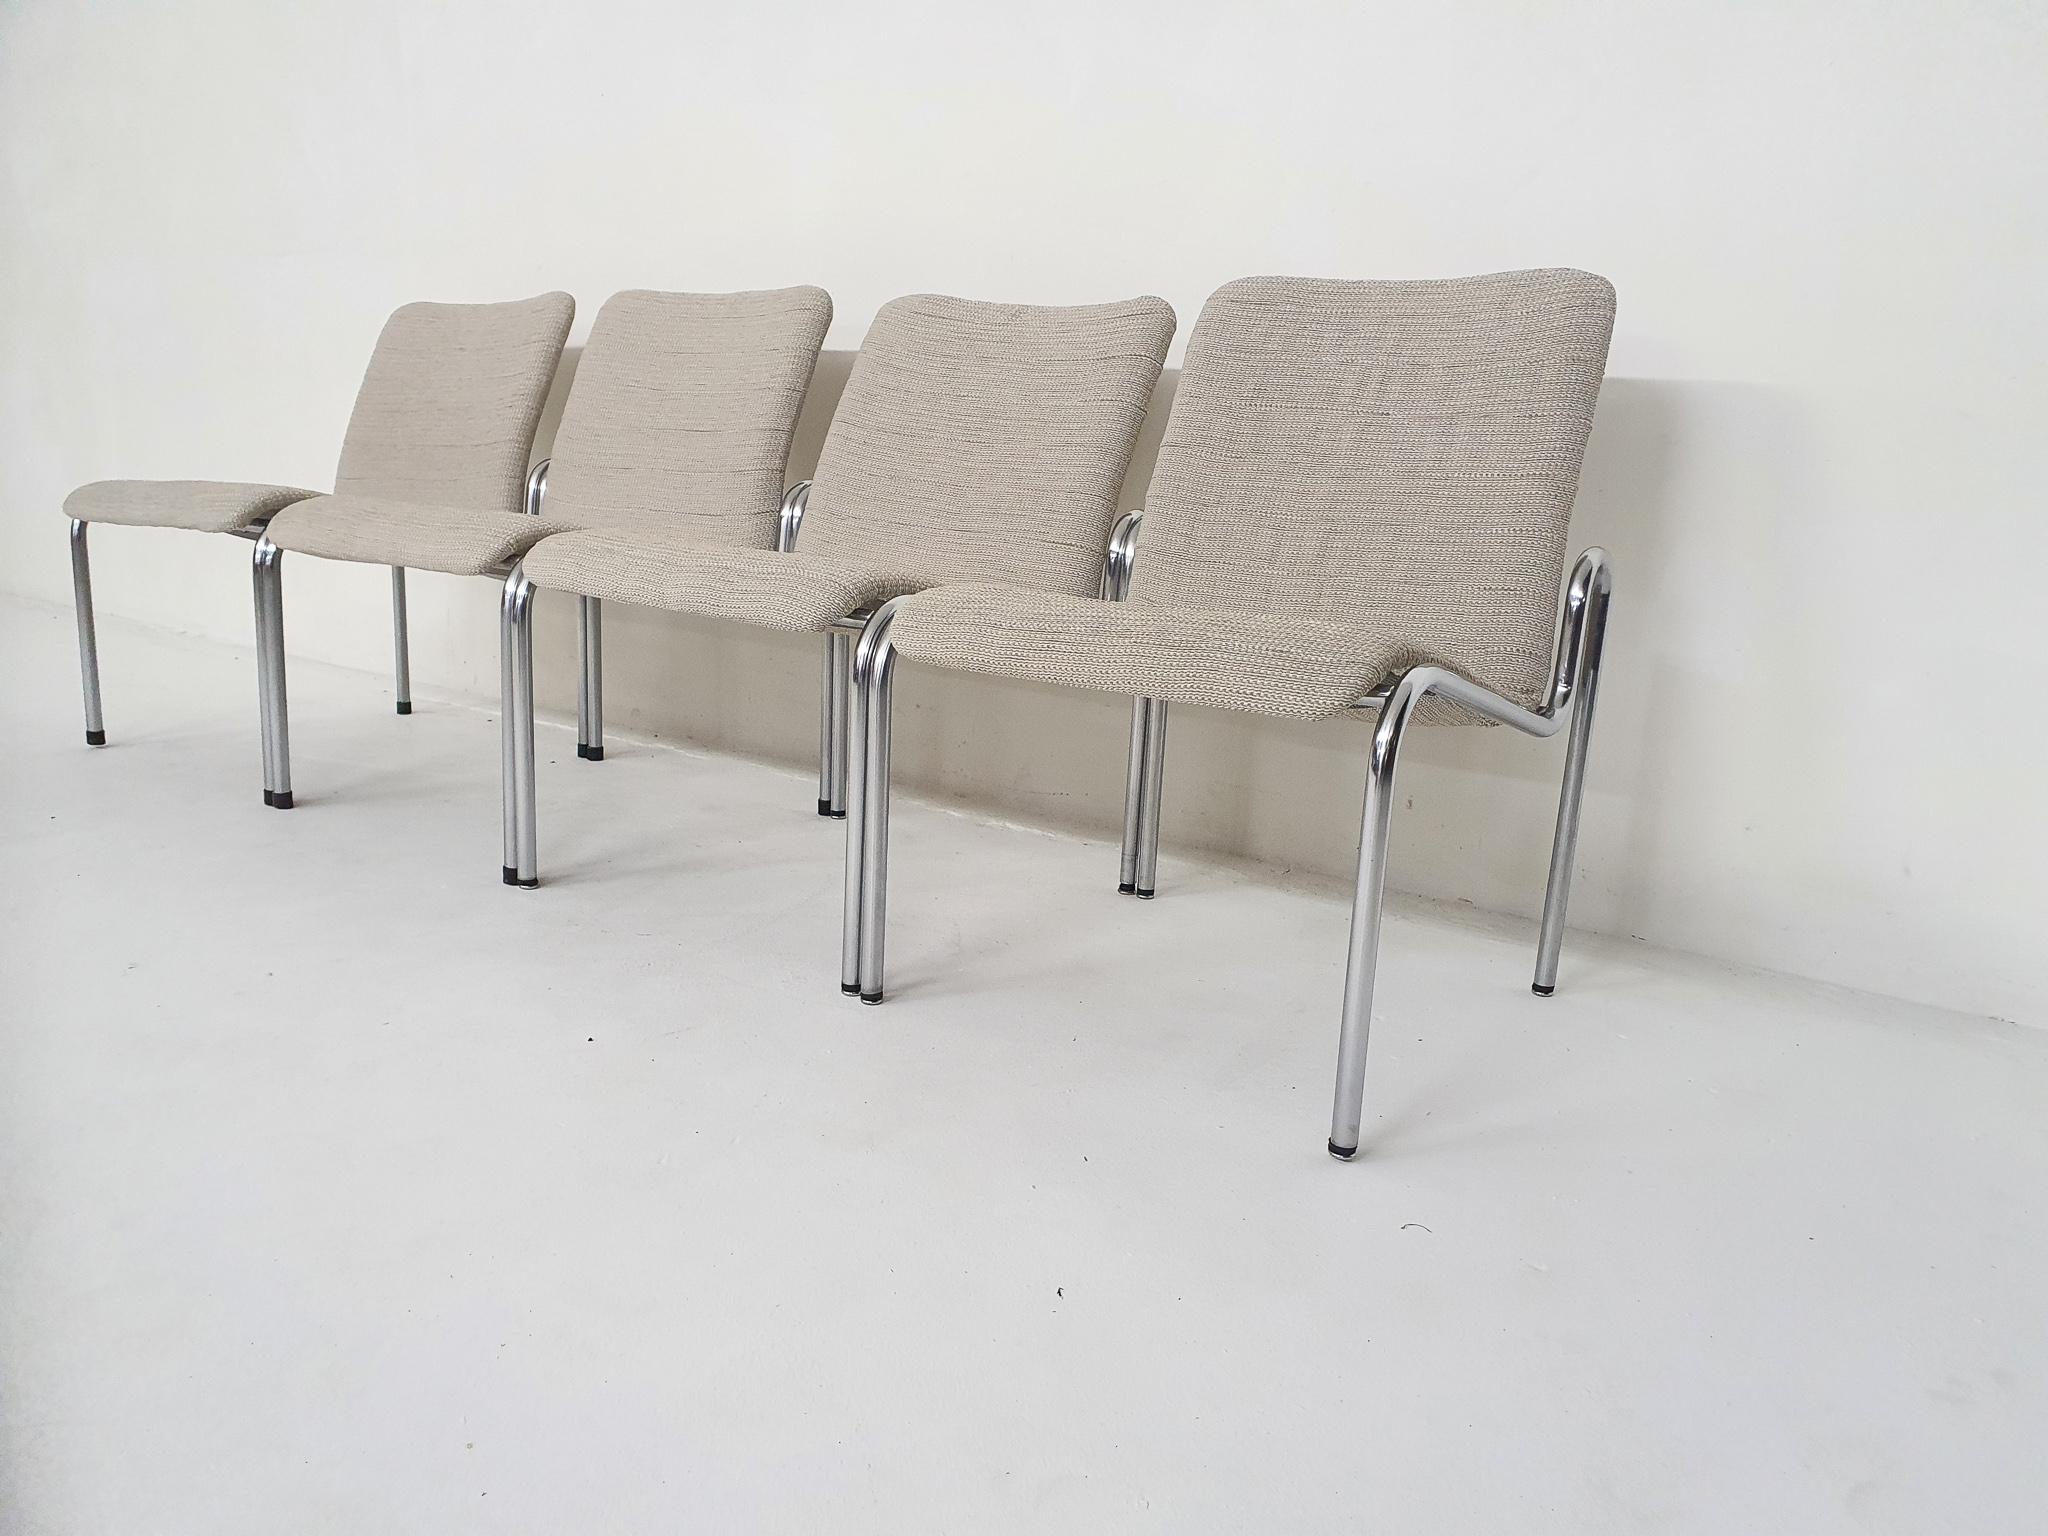 Kho Liang Ie für Stabin Sessel Modell 703, Holland 1960er Jahre

Gestell aus Metallrohr und neue, weiße Polsterung.
Zwei Stühle haben unterschiedliche Gummibodenschoner. Auf dem Boden markiert.

Kho Liang Le
Kho Liang Ie (1927-1975) war ein